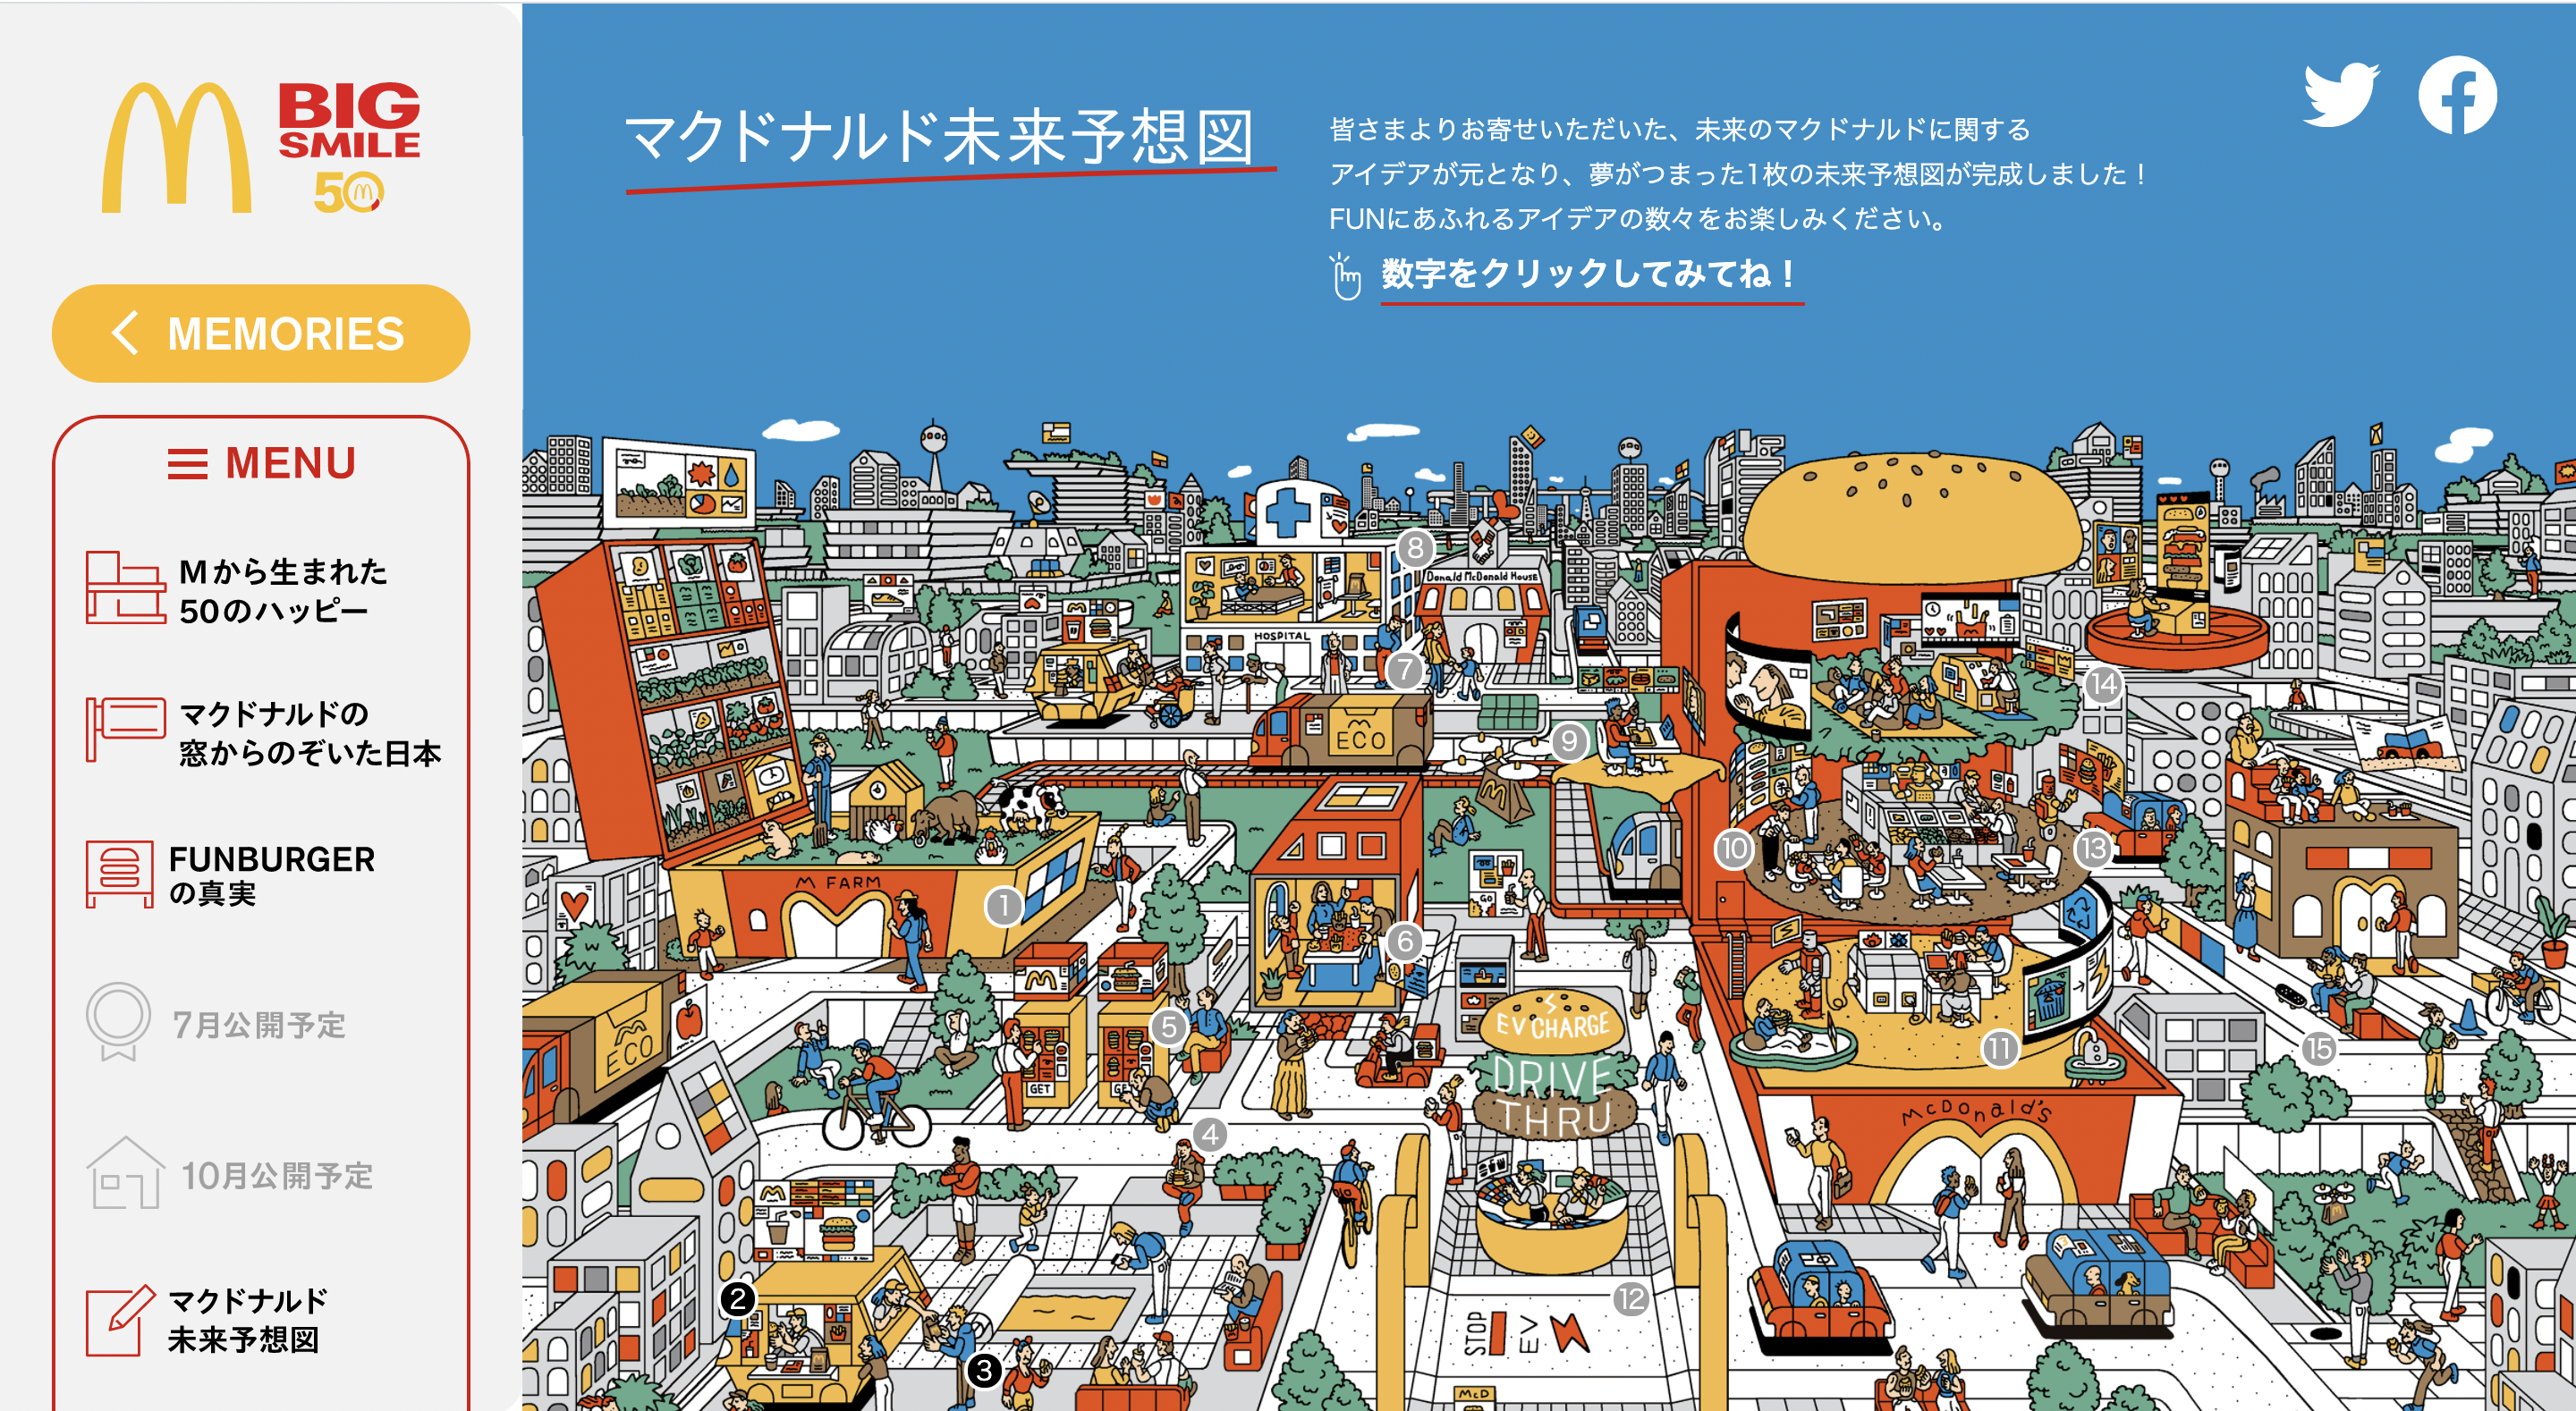 日本マクドナルド誕生50周年企画 お客さんの夢を詰め込んだ マクドナルド未来予想図 を制作 Pr Edge